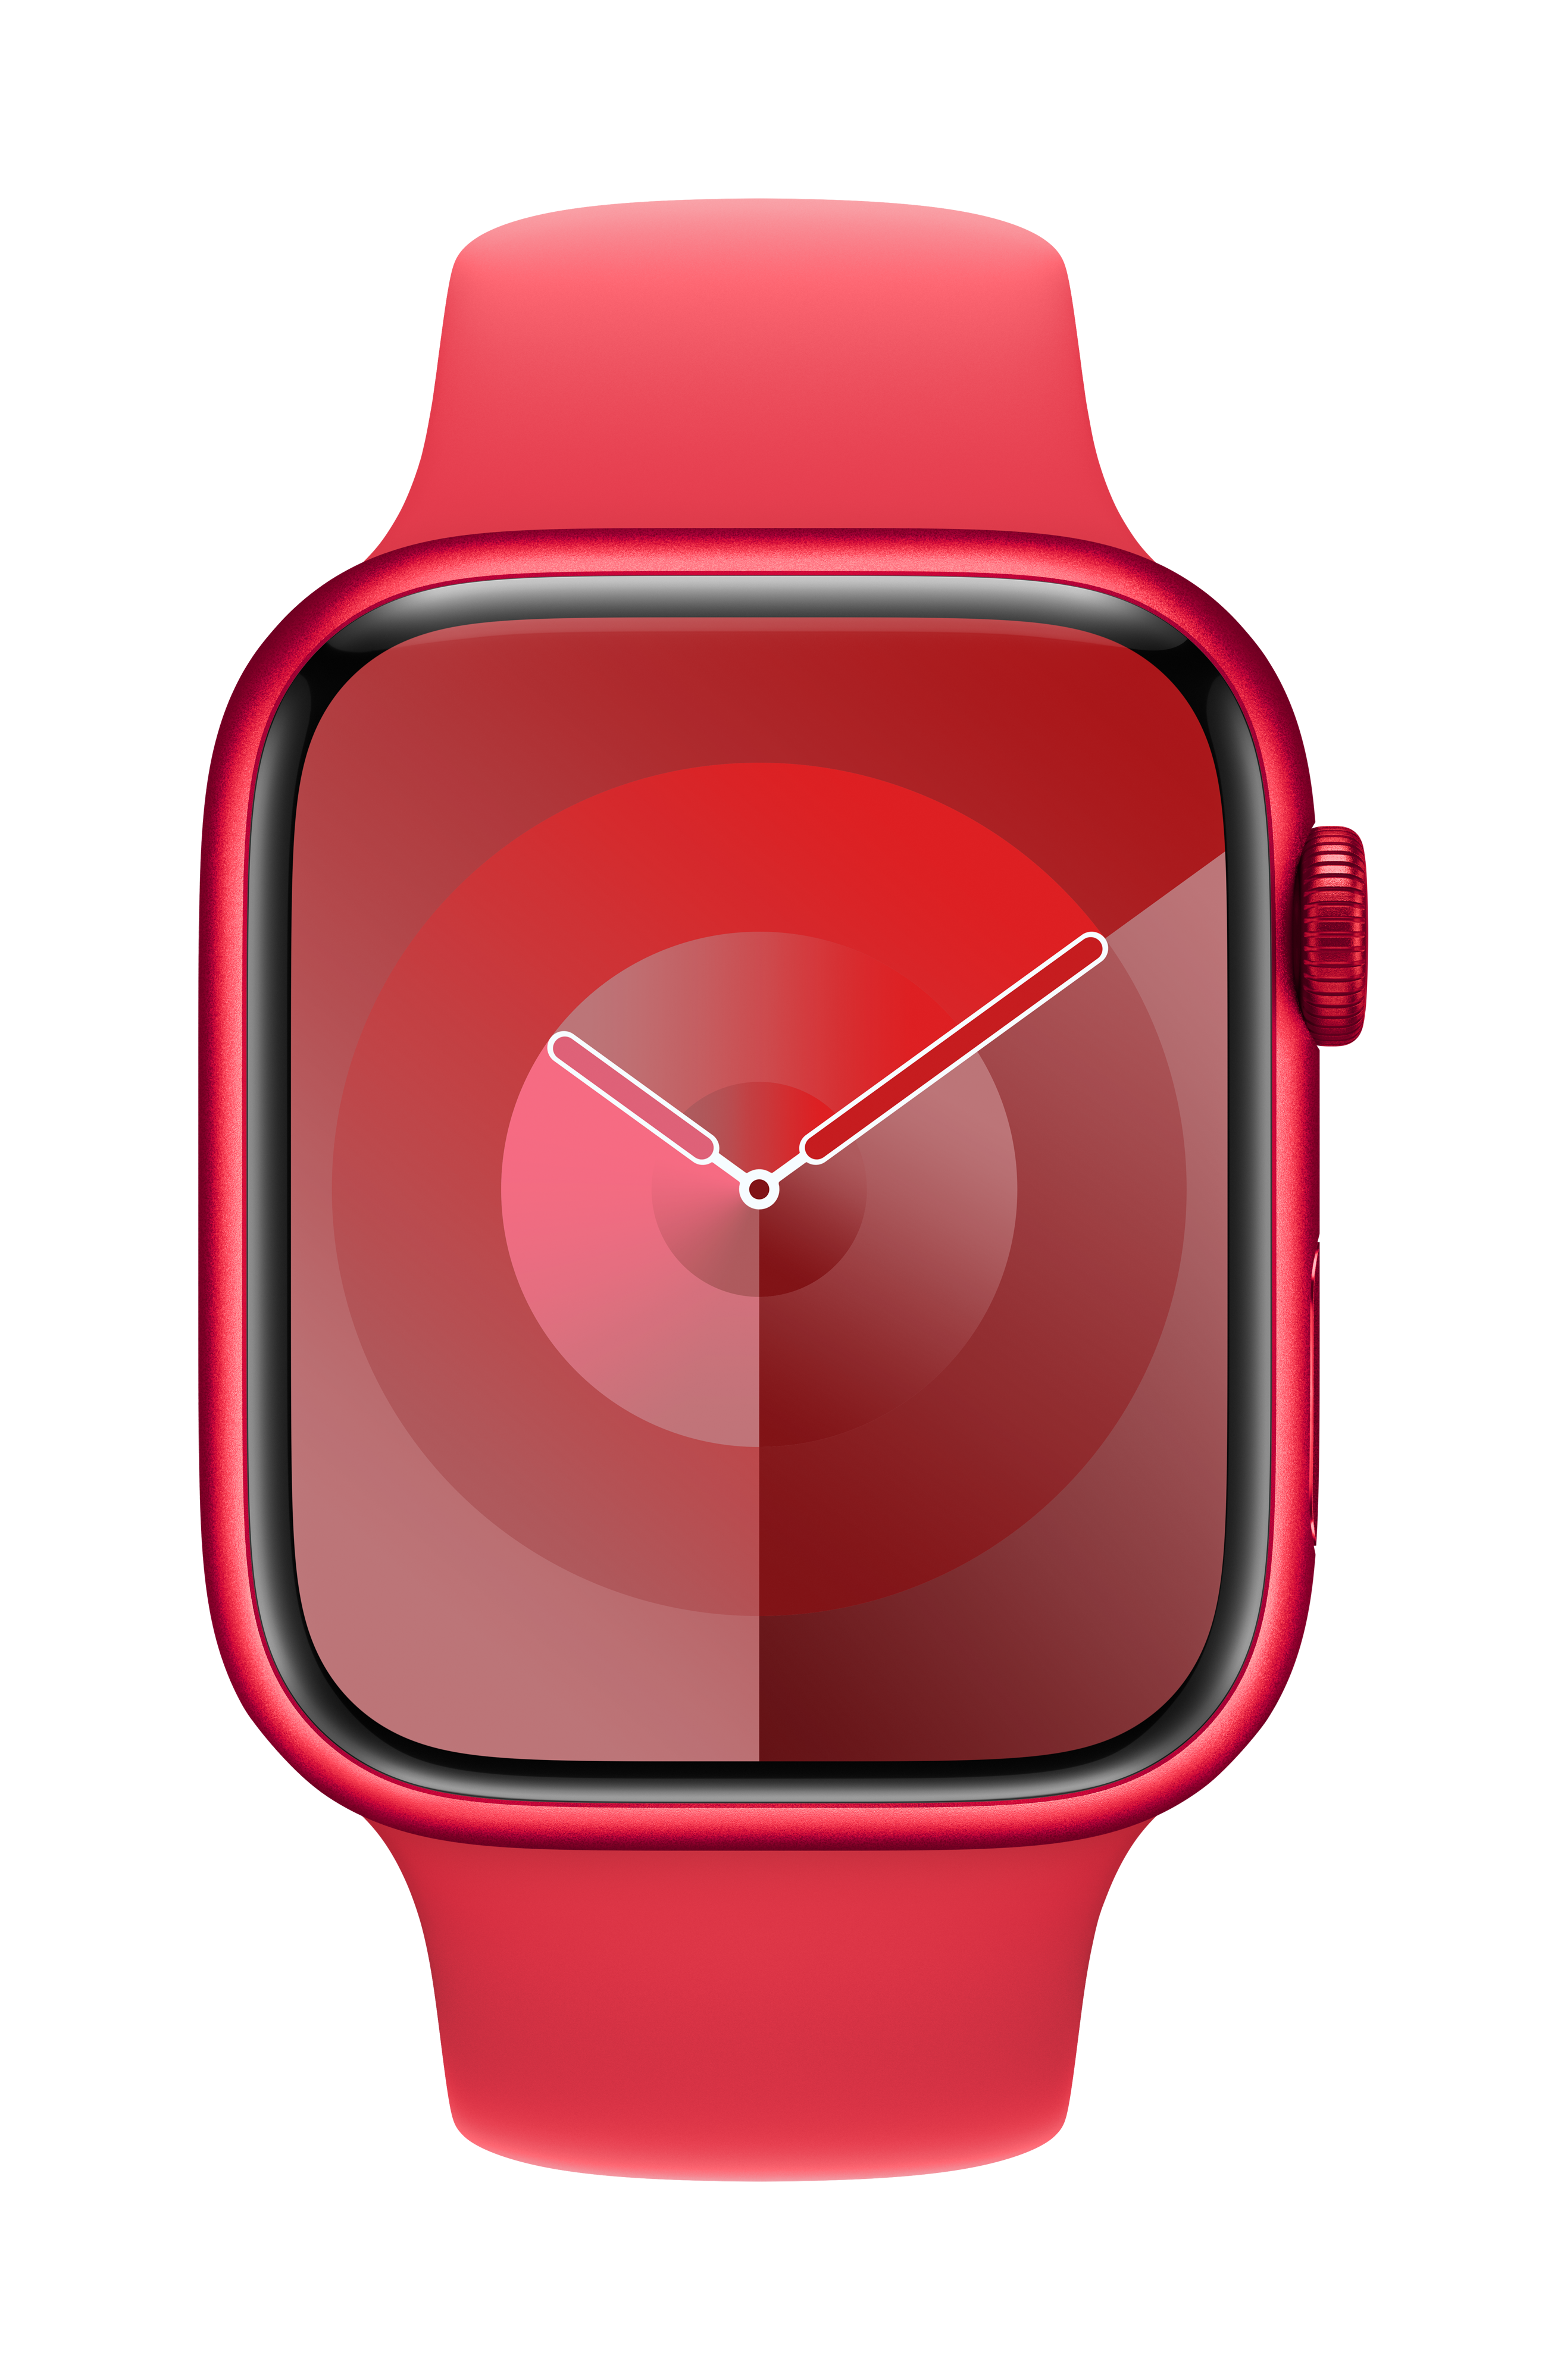 Mit Generali Vitality erhalten Sie bis zu 480 Euro Cashback auf eine Apple Watch Ihrer Wahl.